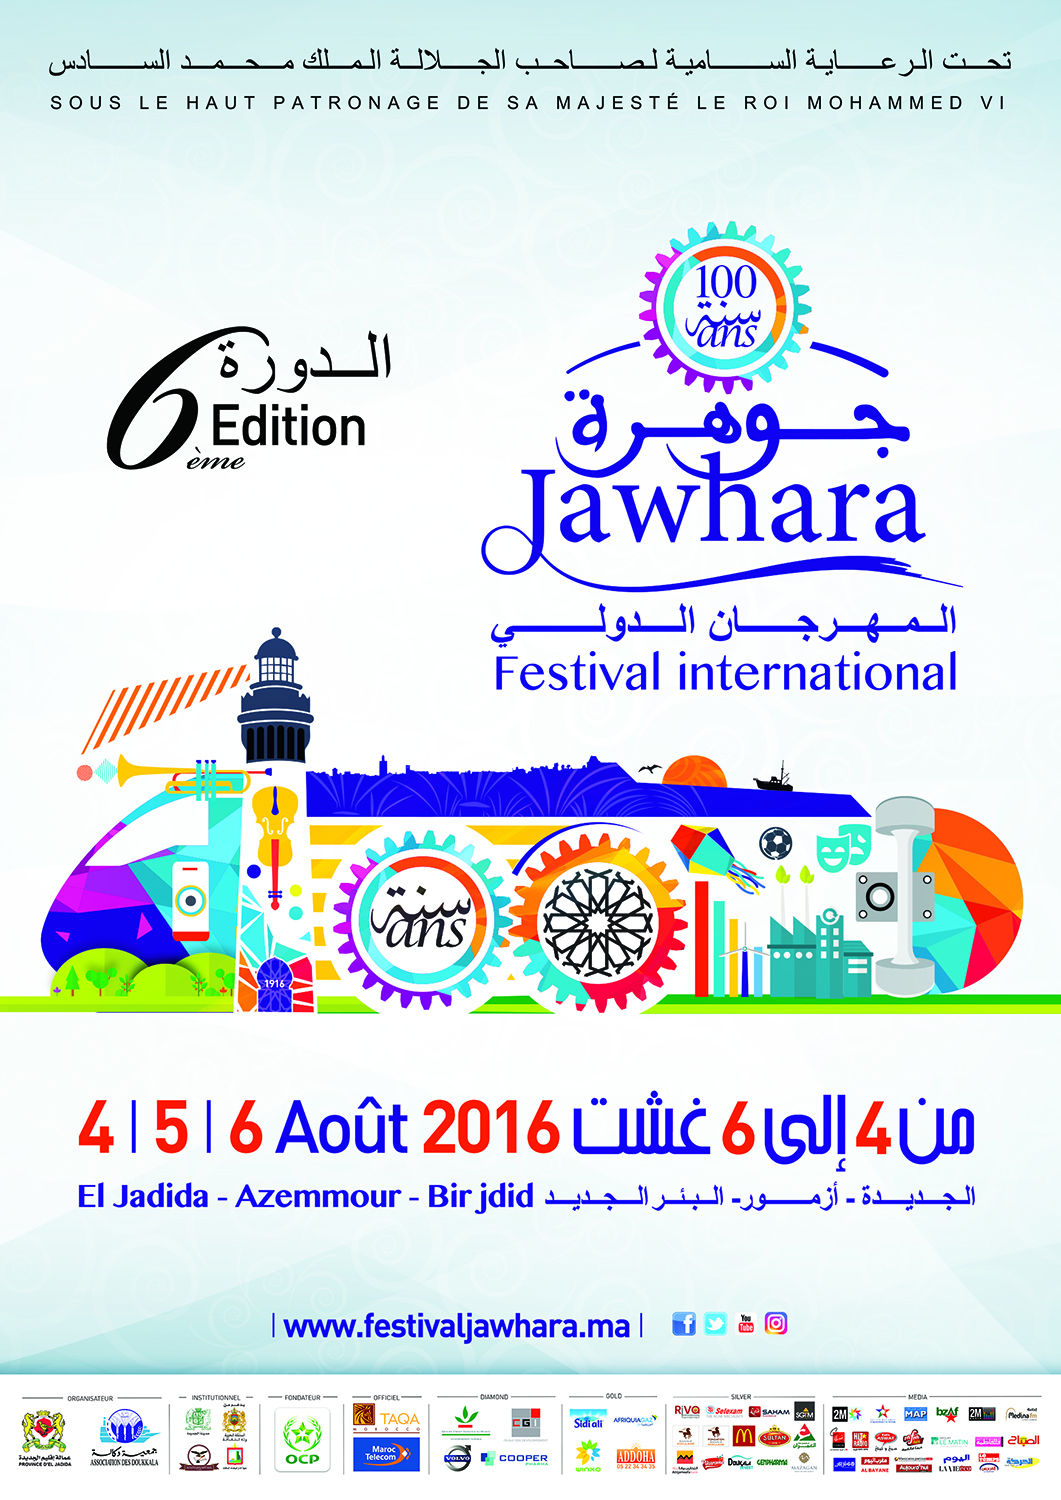 Le Festival Jawhara  célèbre le  modernisme d’El Jadida